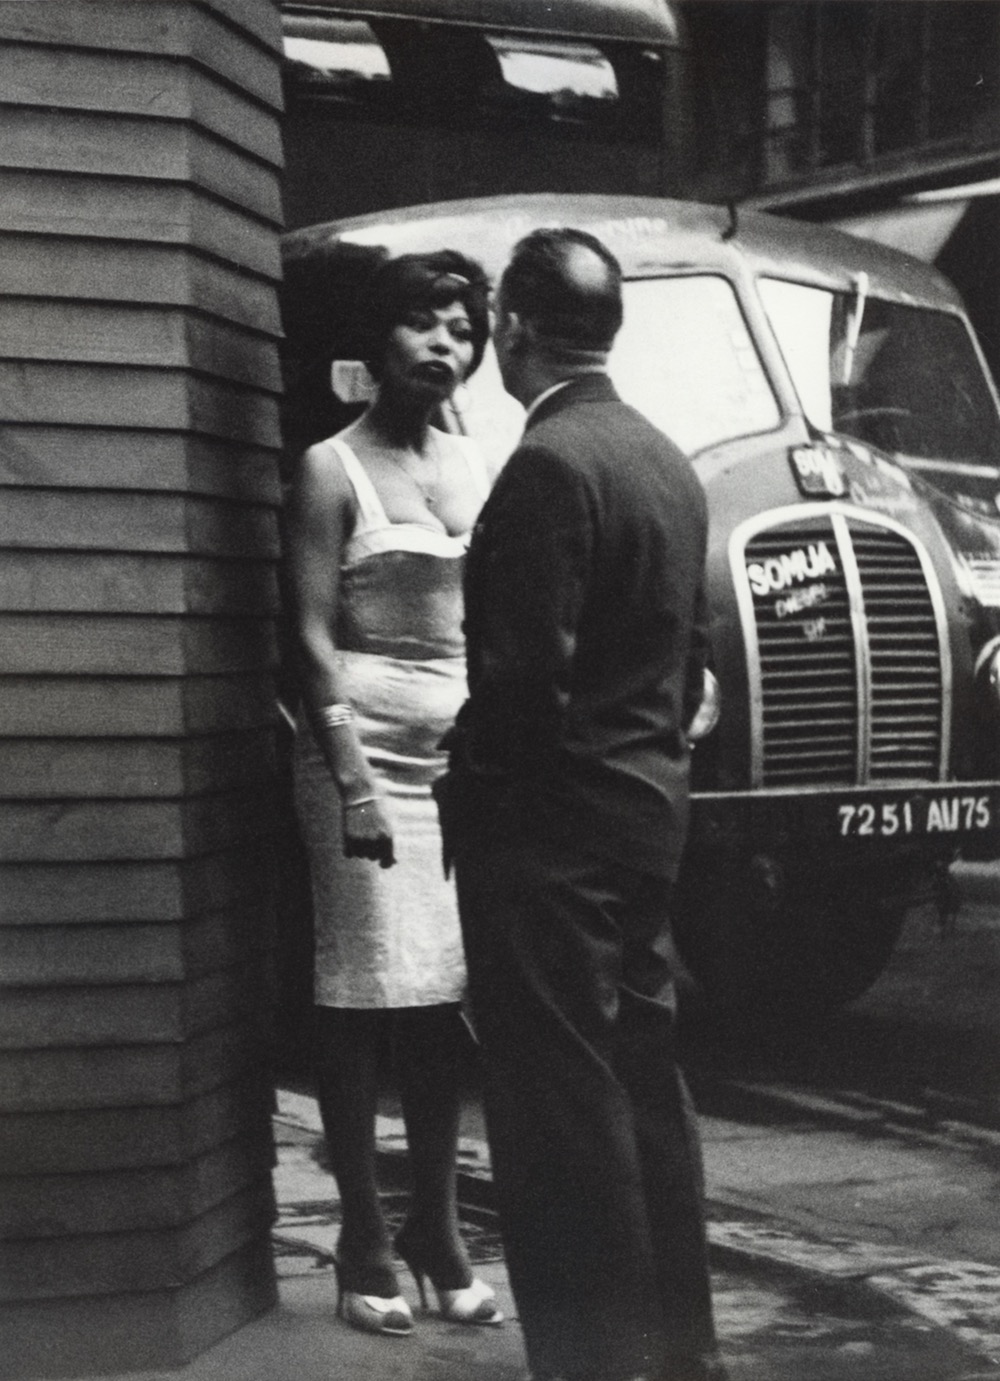 Potential Client, Prostitution Series, Rue Saint Denis, Paris, 1960